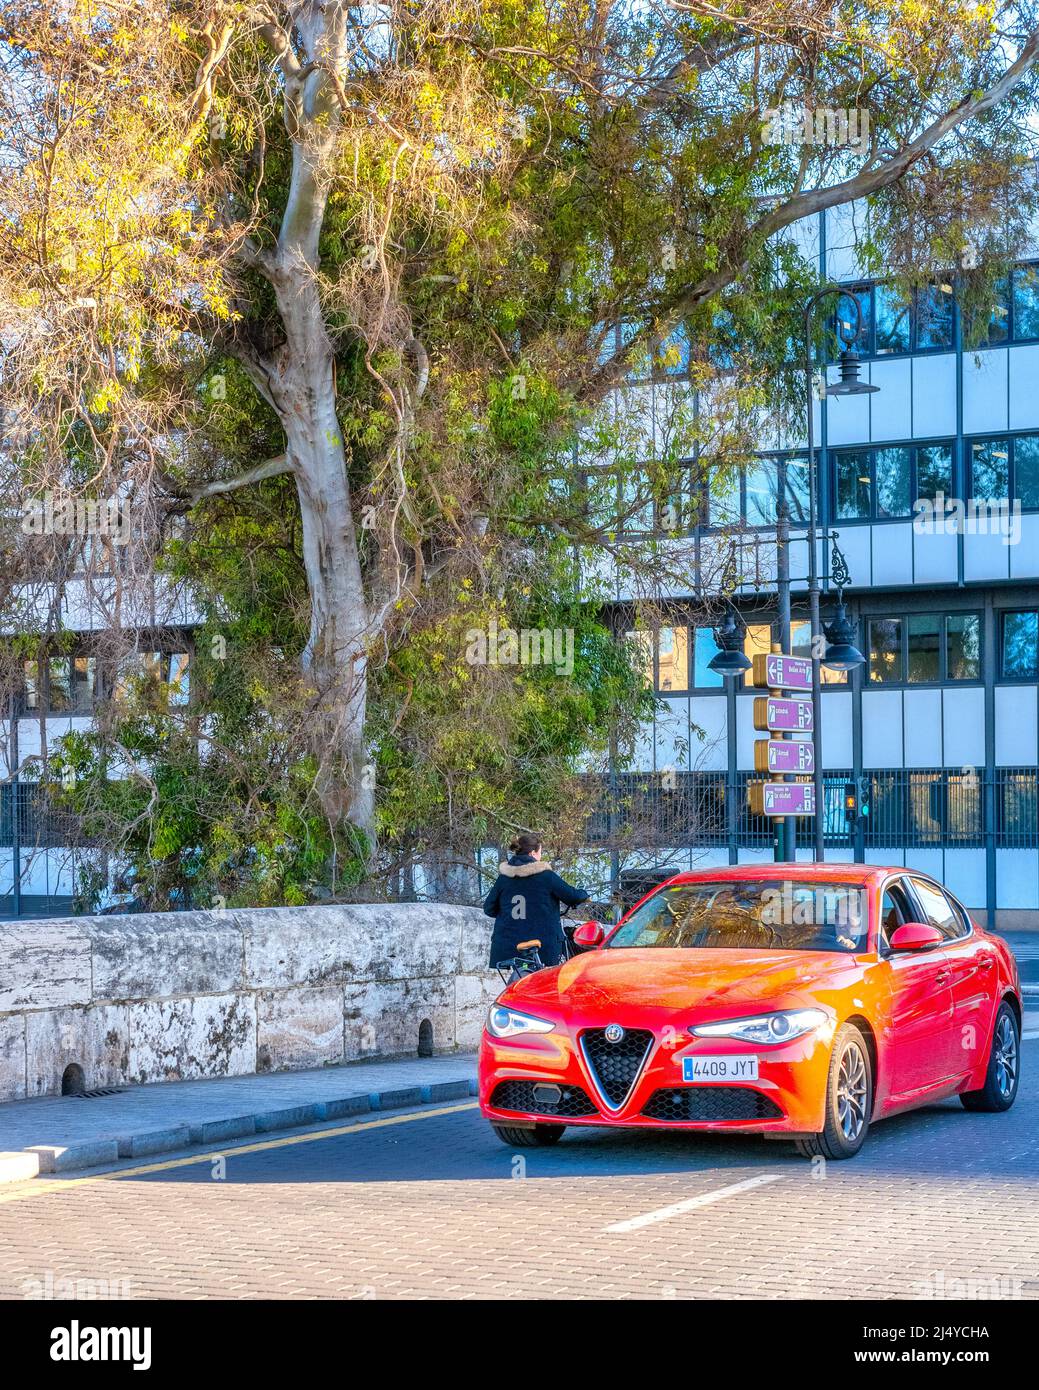 Une voiture rouge Alfa Romeo se trouve dans une rue de la ville. Un arbre et un immeuble d'appartements sont vus en arrière-plan. La vieille ville est une attraction touristique majeure. Banque D'Images